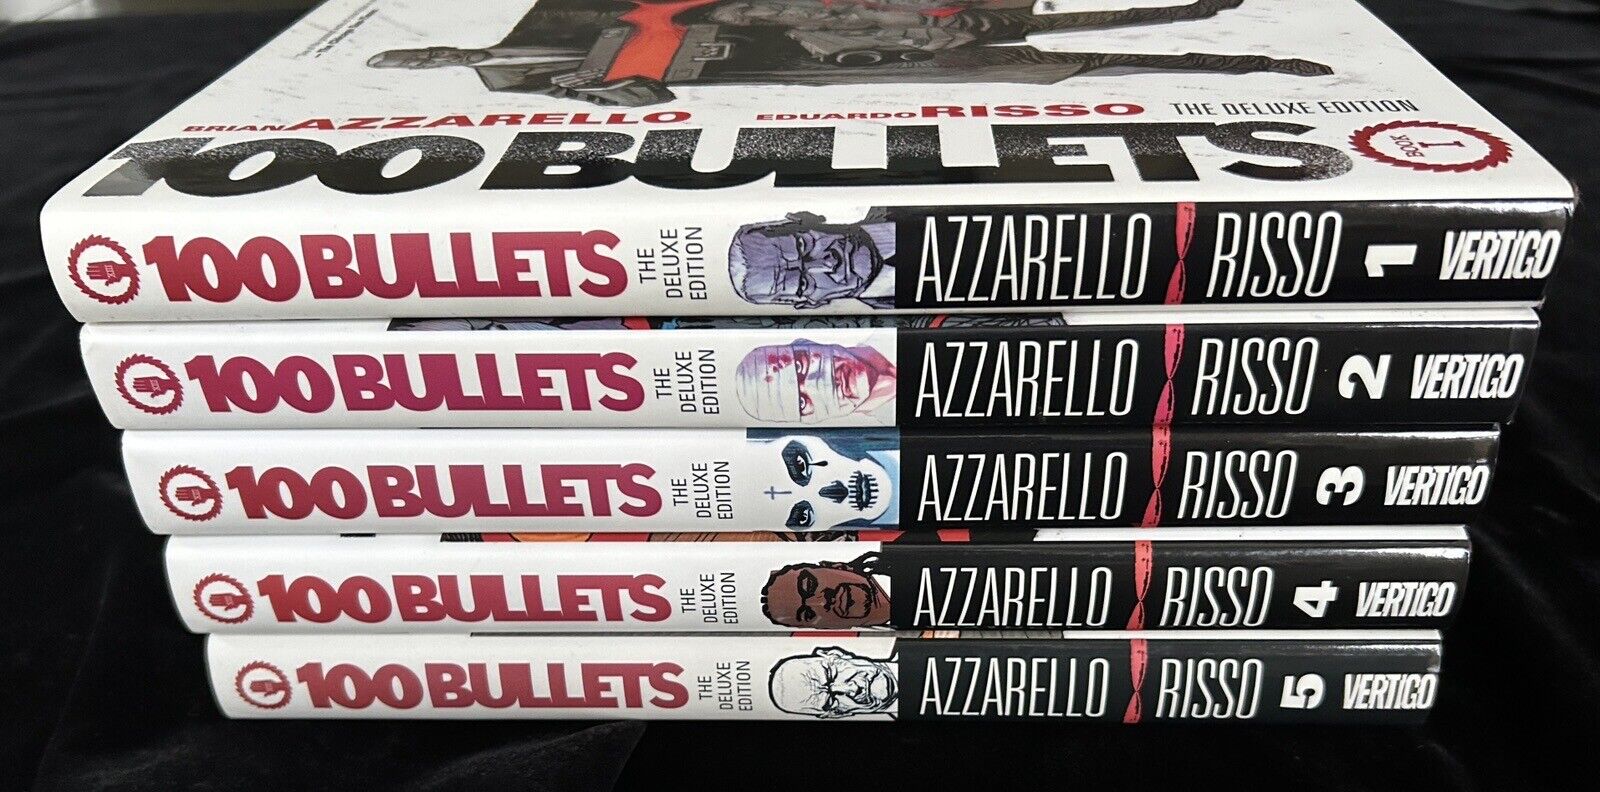 100 Bullets: Deluxe Edition Volumes #1-5 1 2 3 4 5 (2011) HC set Azzarello/Risso